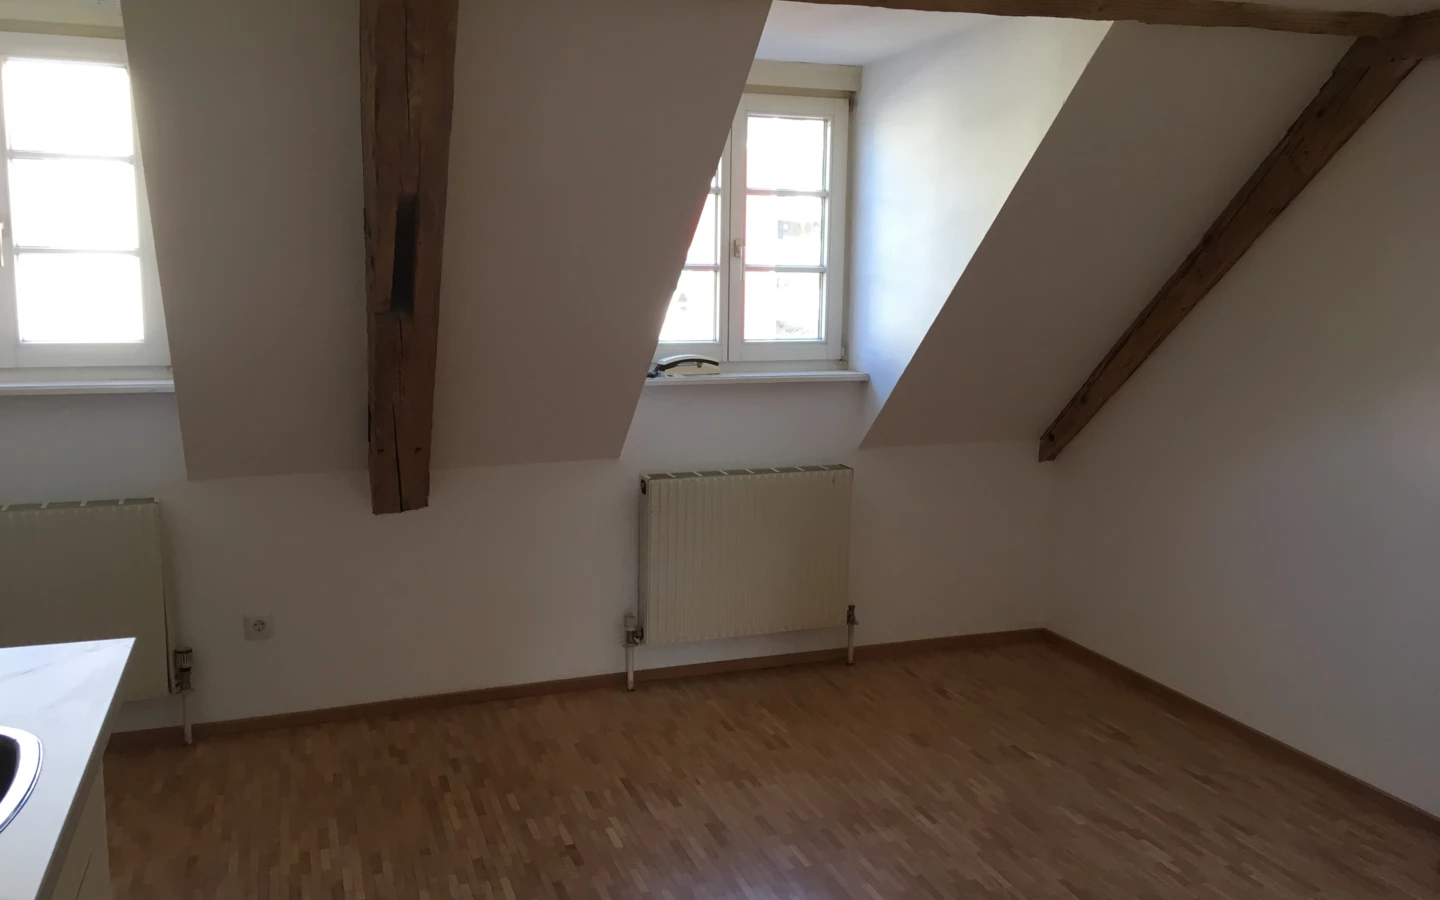 Dachboden mit Dachschräge, leerer Raum mit Holzboden und Fenster nach draußen